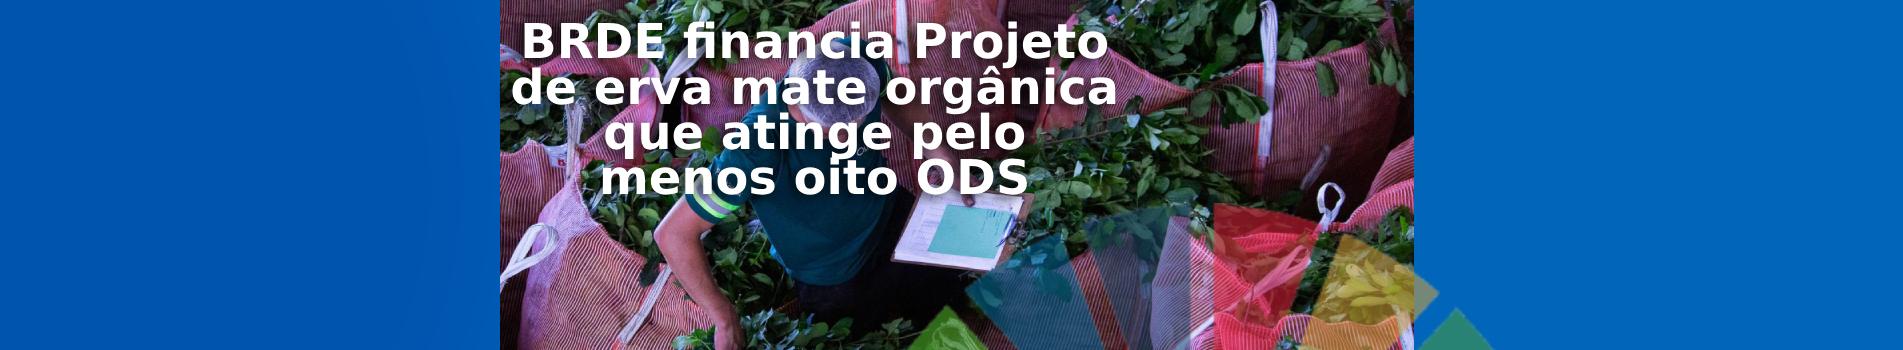 Projeto de erva mate orgânica financiado pelo BRDE